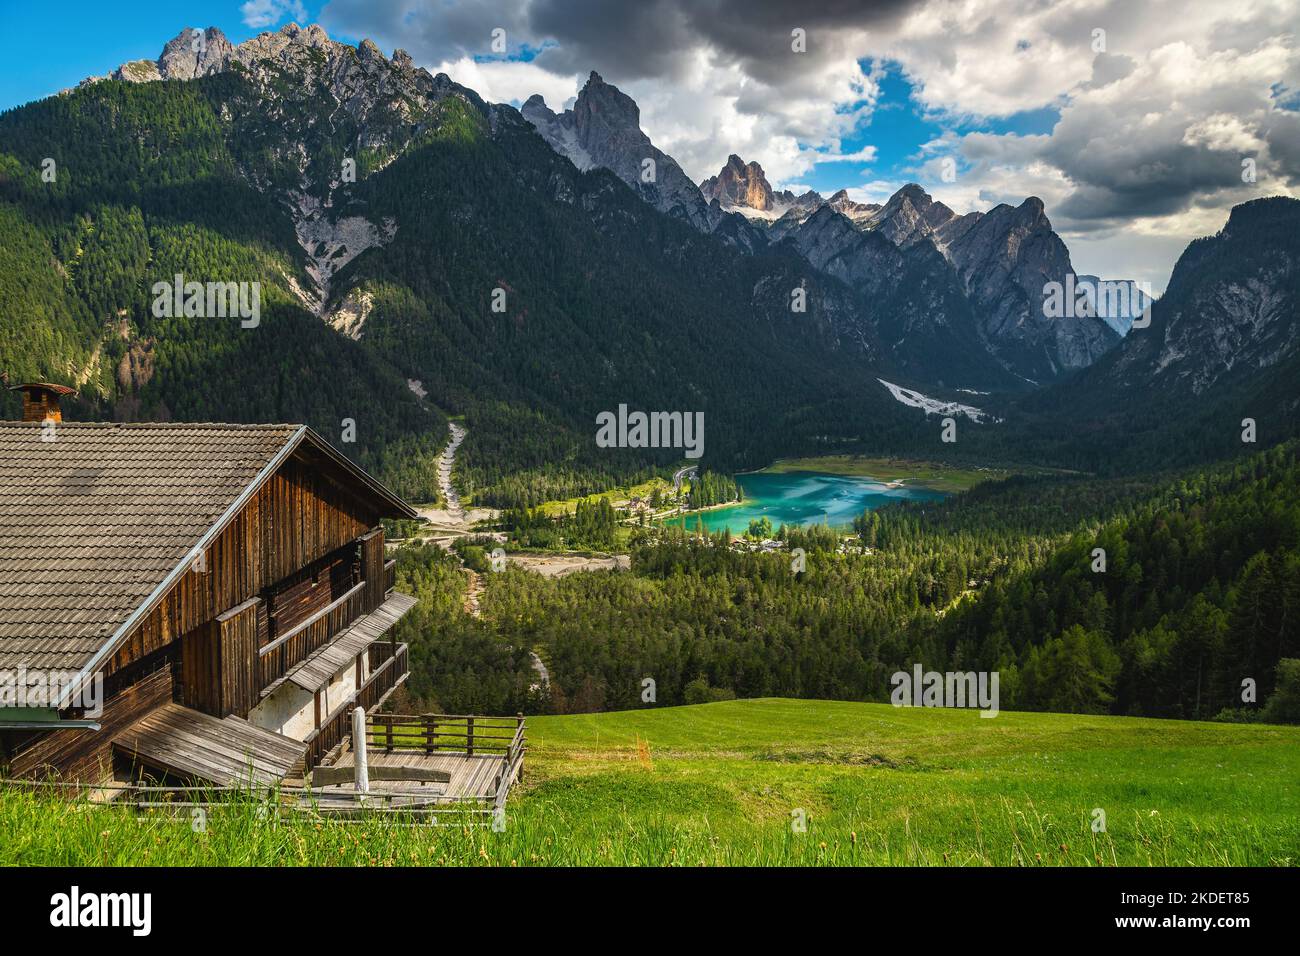 Maison en bois sur la pente et magnifique turquoise lac de Toblacher en arrière-plan, Dobbiaco, Dolomites, Italie, Europe Banque D'Images